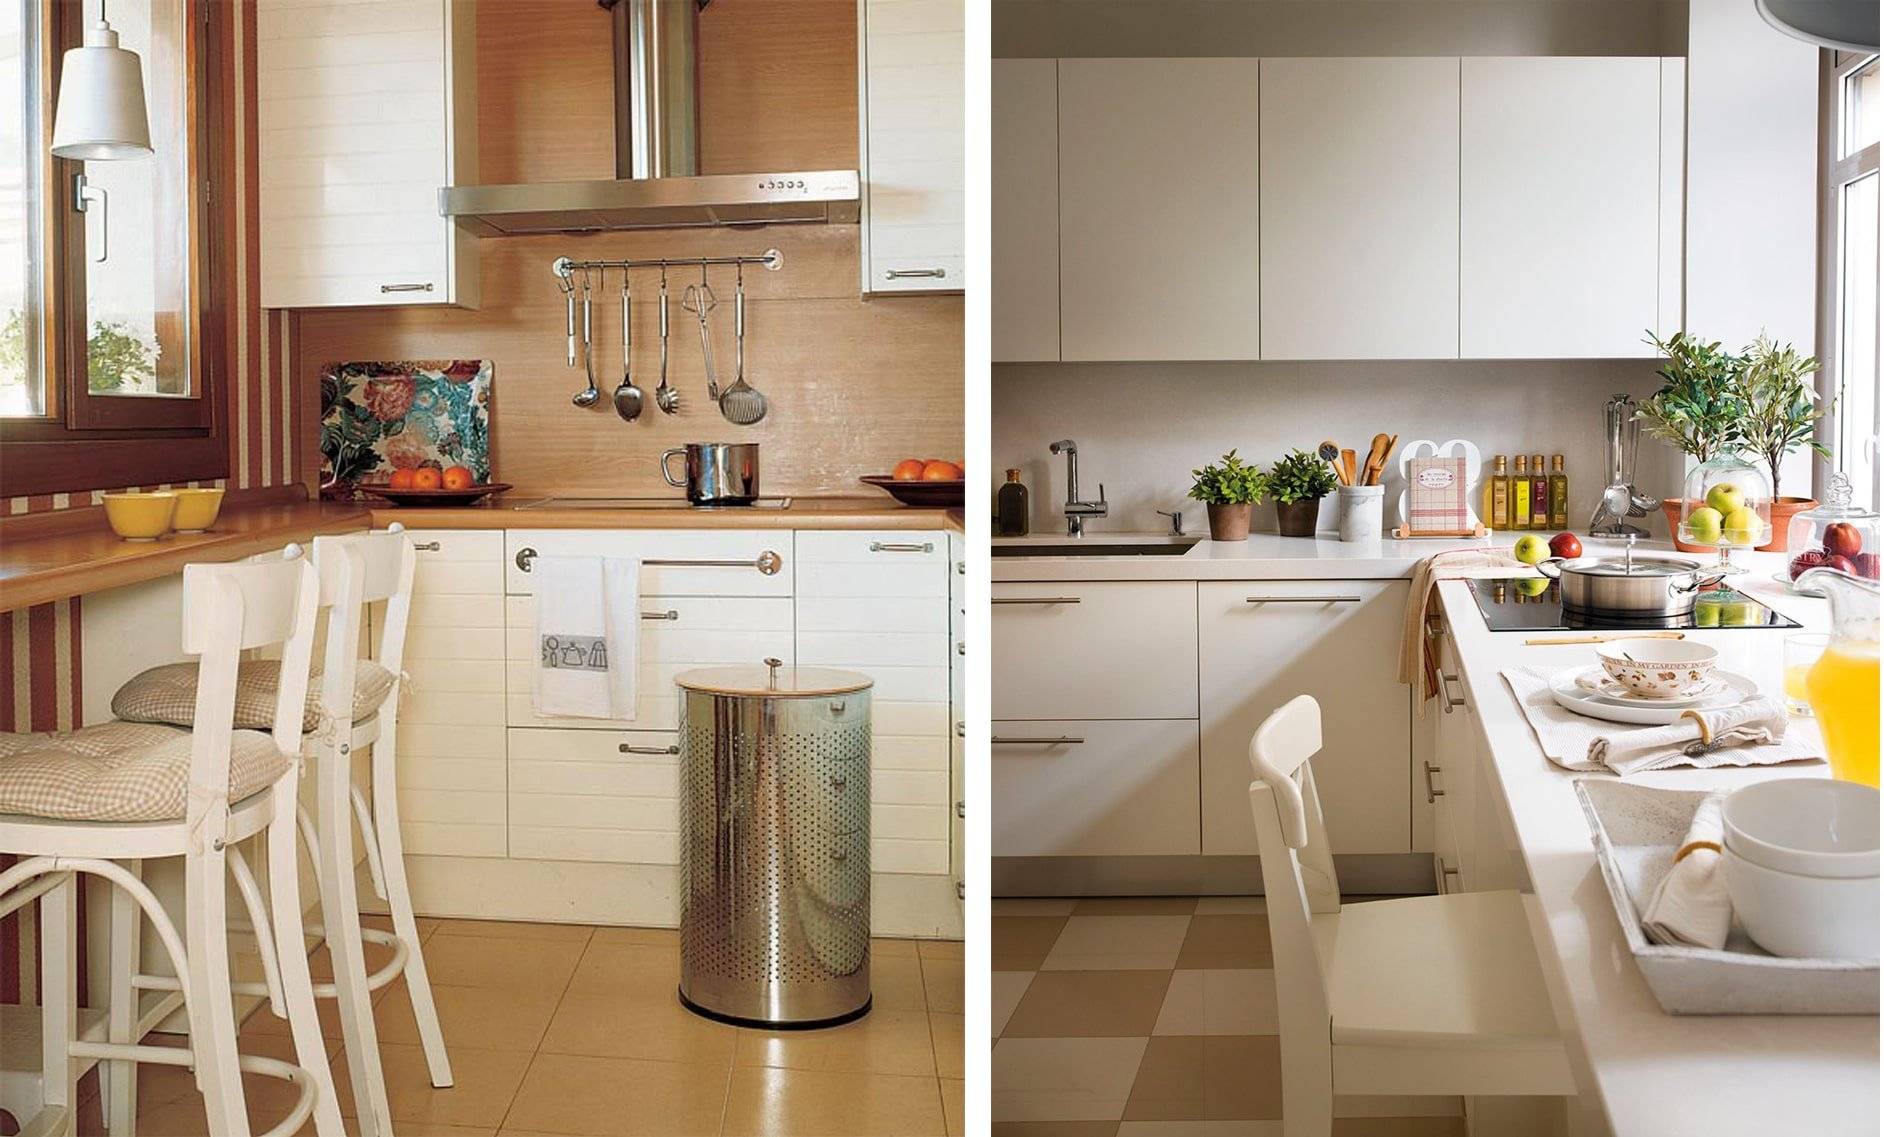 Малогабаритная кухня: фото примеров интерьера кухни маленького размера